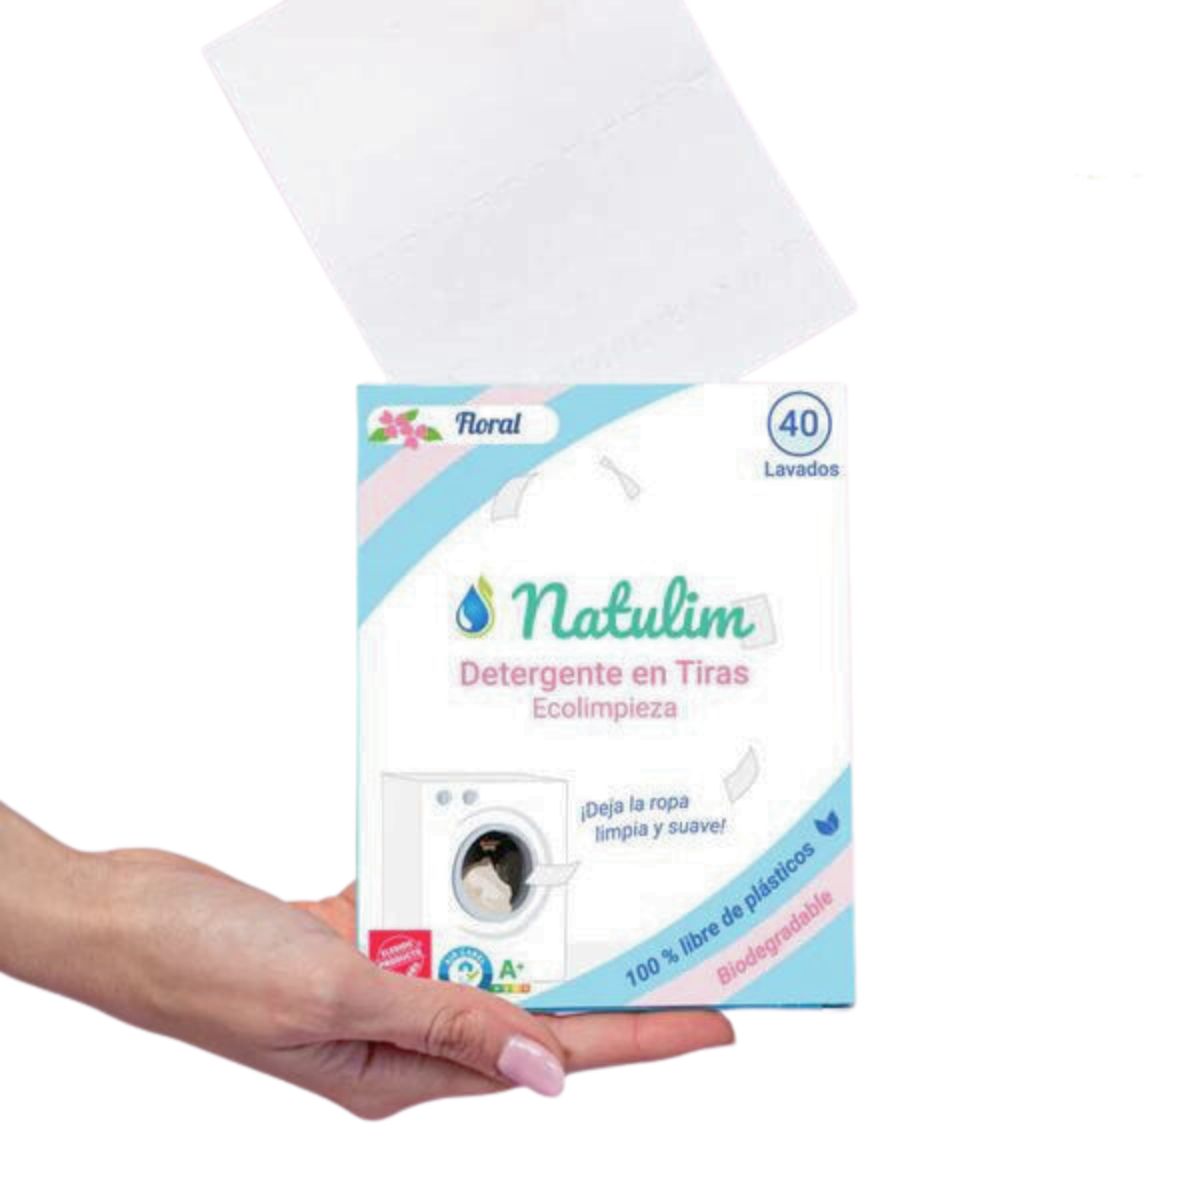 Detergente tiras biodegradable Lavanda 32 lavados Natulim  EBOS Tienda  online de productos naturales eco y bio certificados